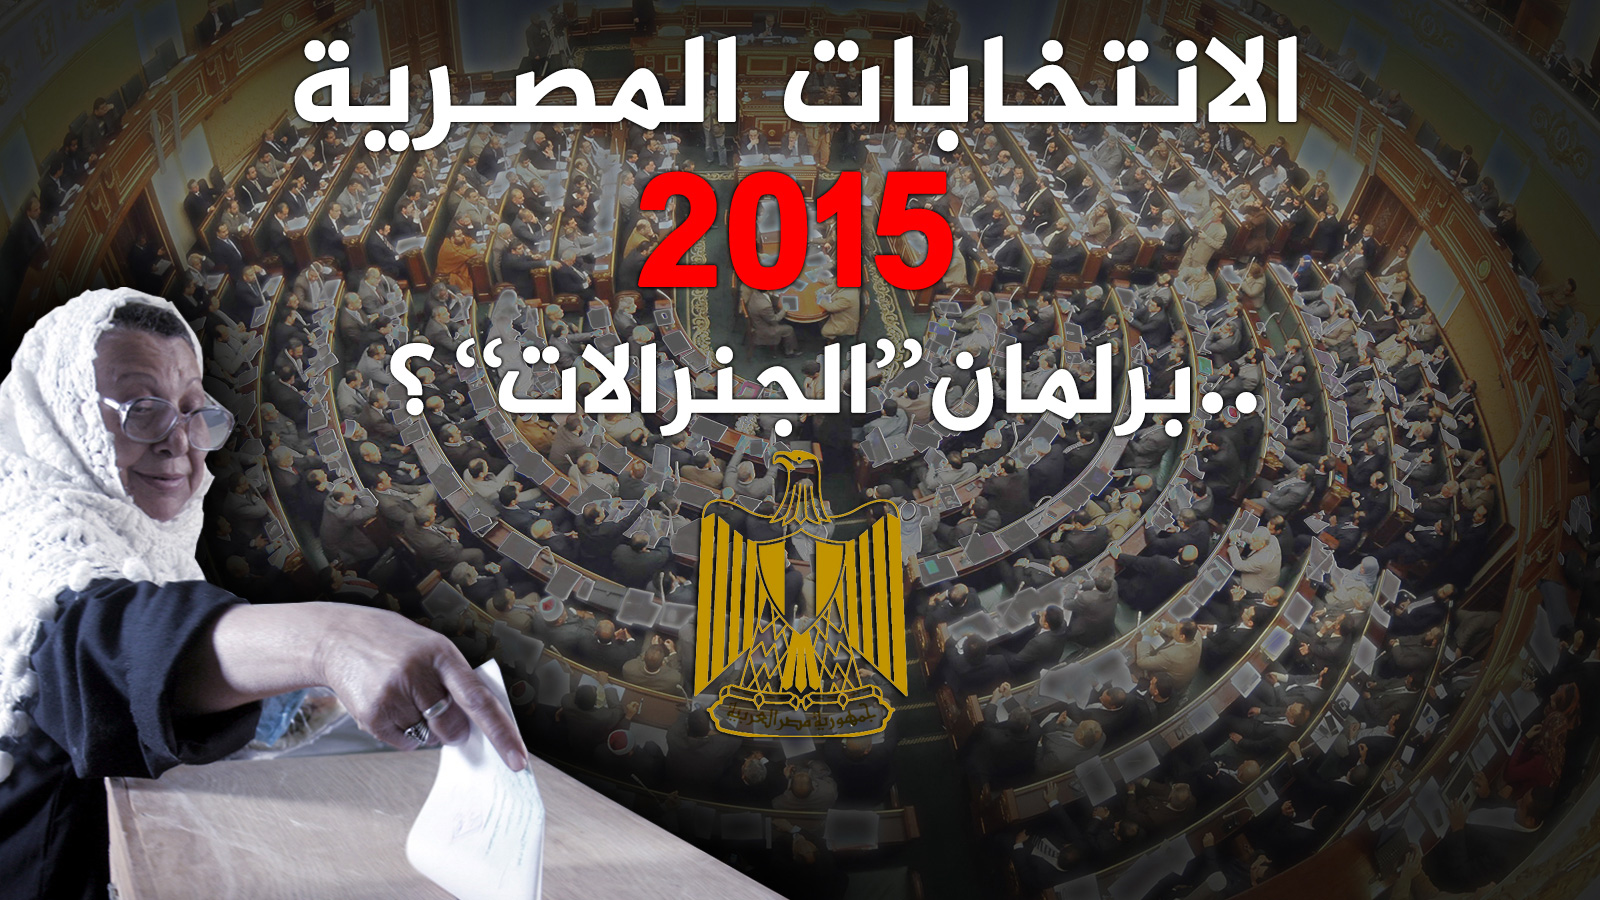 ‪‬ اقرأ أيضا: الانتخابات المصرية 2015 